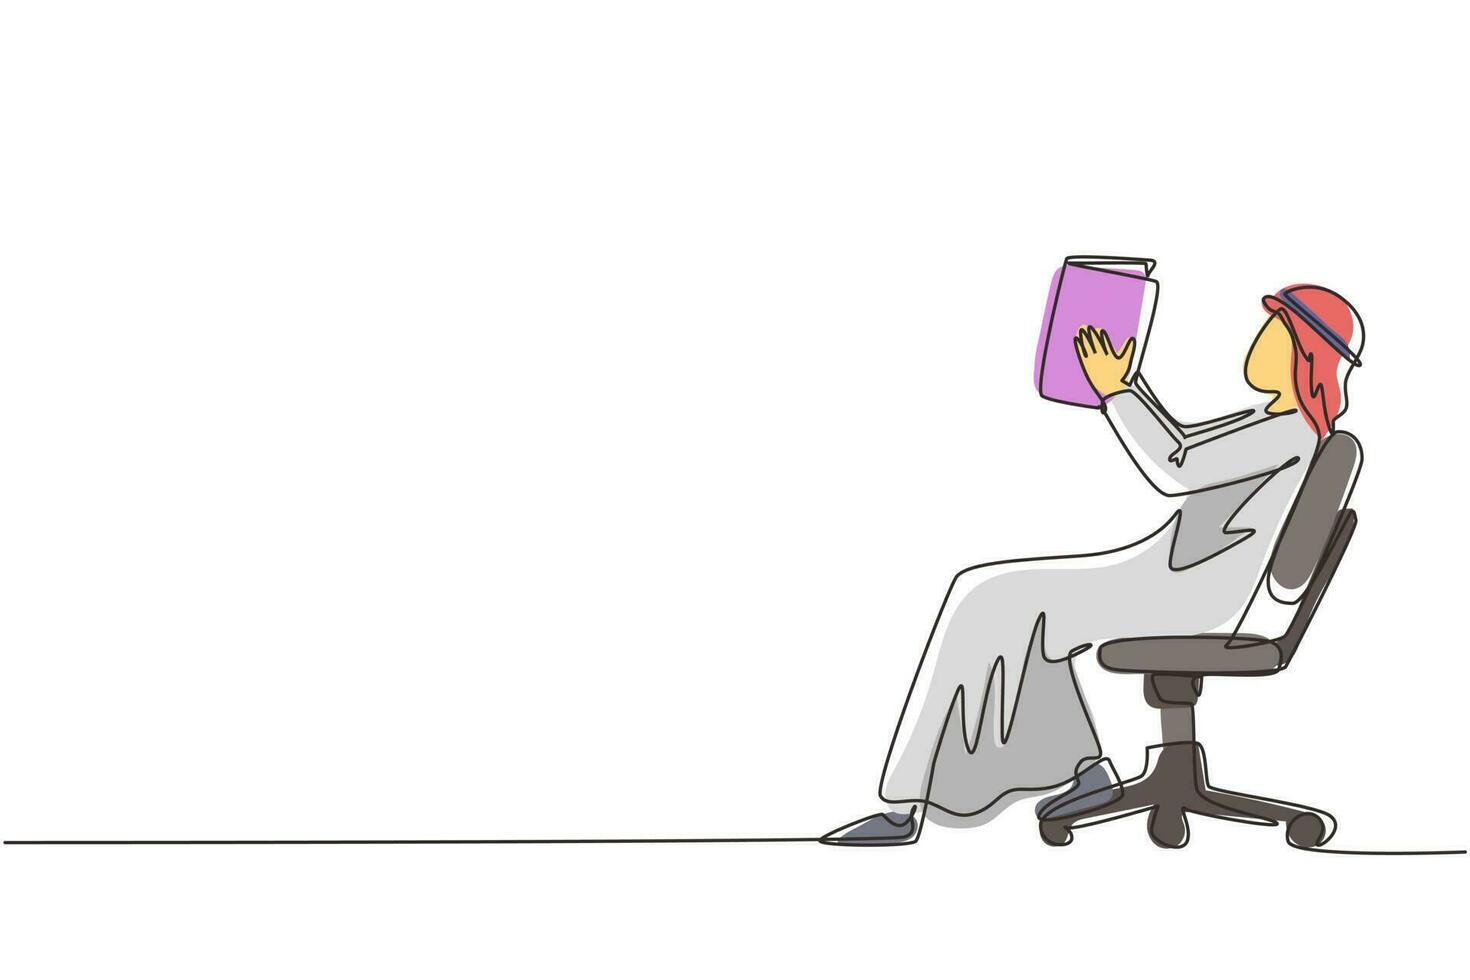 un unico disegno a tratteggio uomo arabo legge il libro in sedia. vista laterale del processo di apprendimento in uscita da parte di un giovane maschio. stile del ragazzo che trascorre il tempo libero leggendo la letteratura. vettore di disegno a linea continua